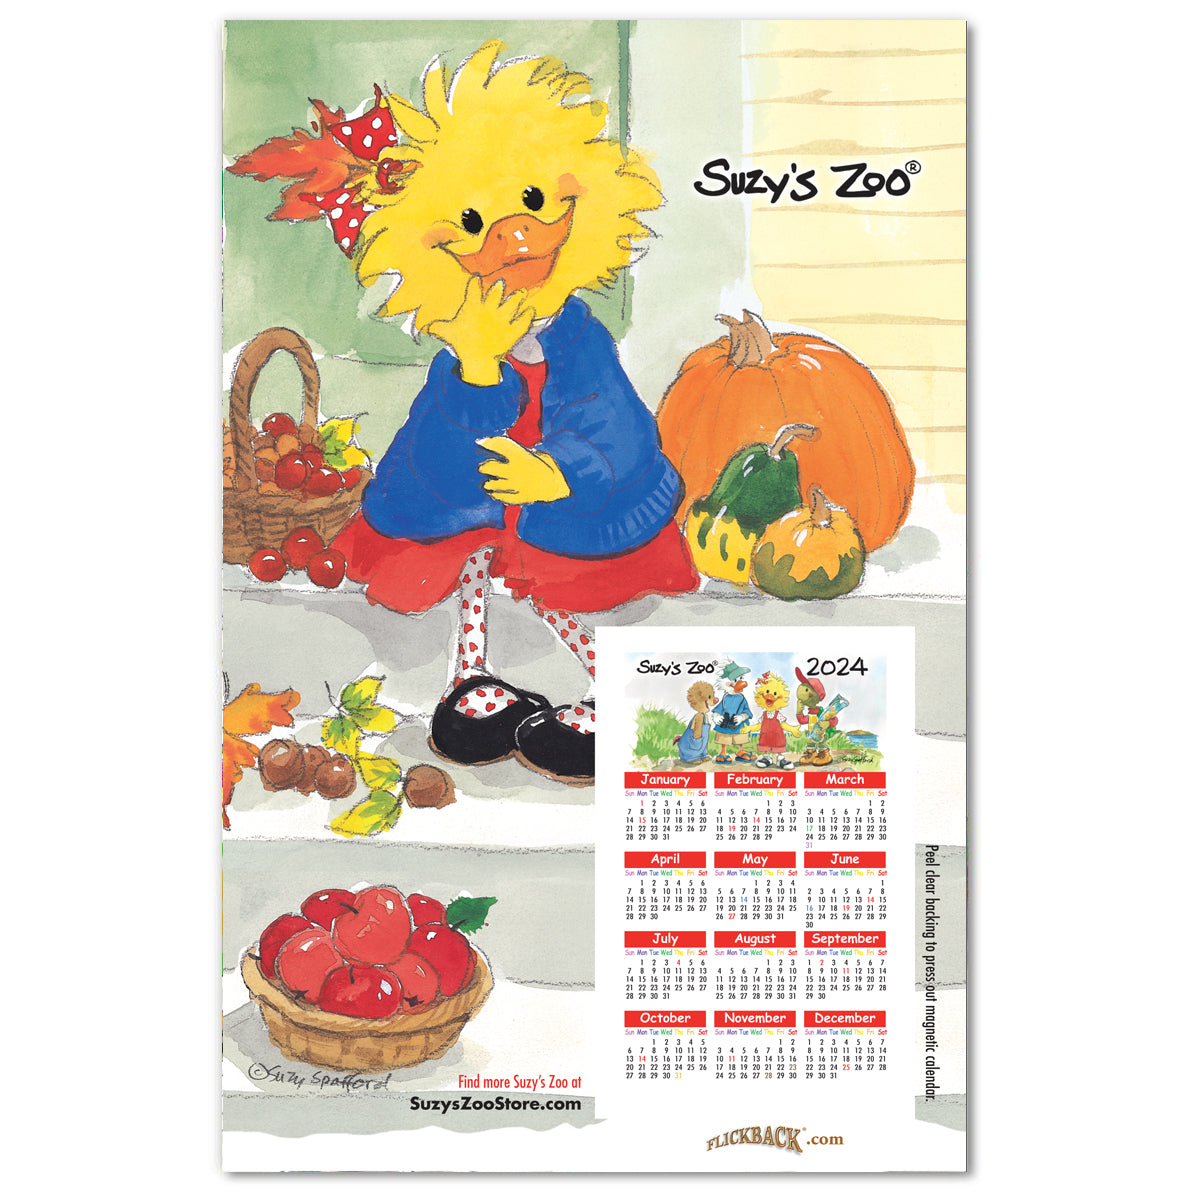 Suzy Zoo 2025 Calendars For Sale 2020 - Clare Dorotea